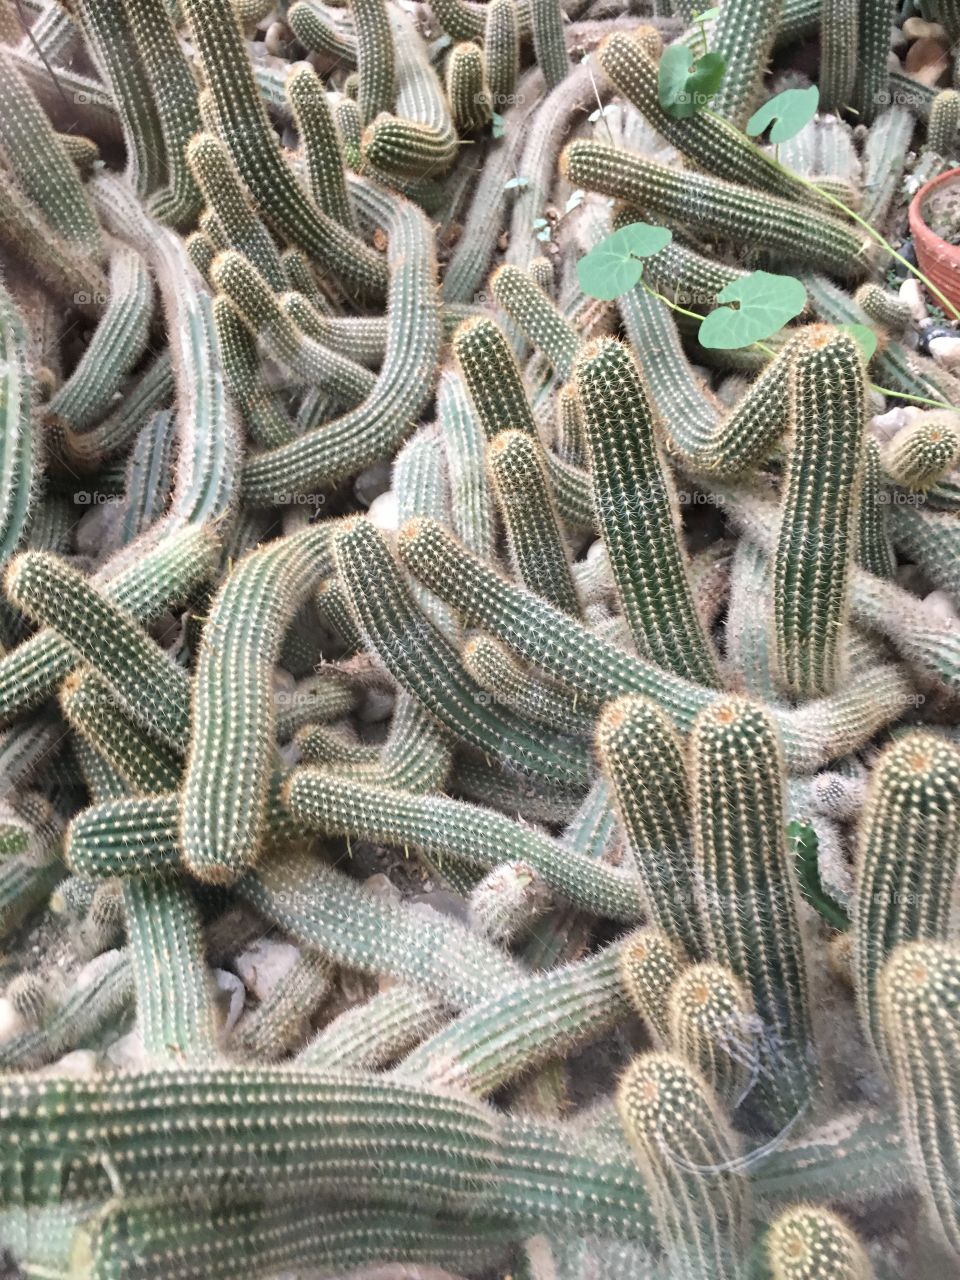 Full frame of cactus